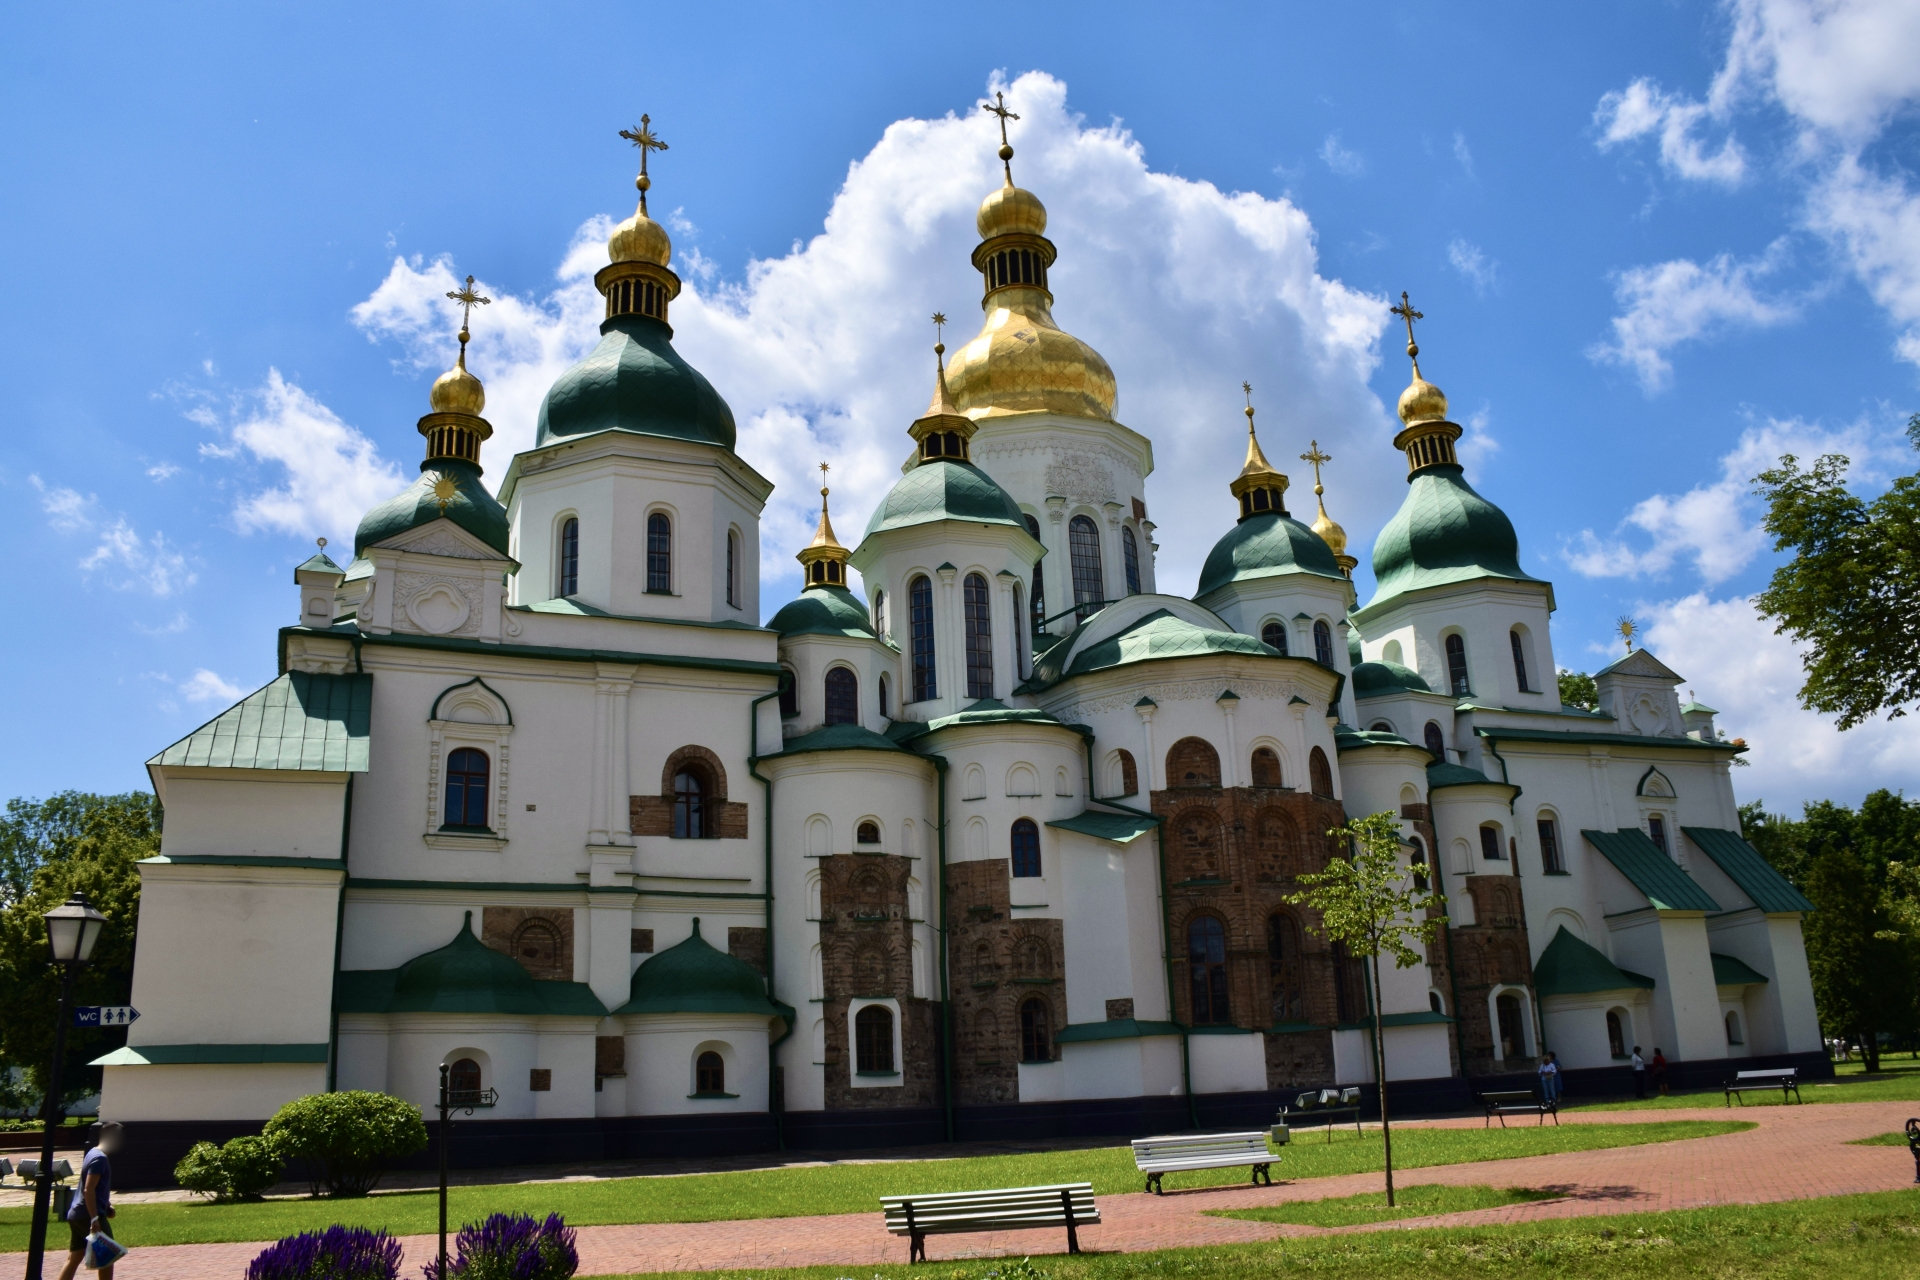 キエフ：聖ソフィア聖堂と関連修道院群、キエフ・ペチュルスカヤ大修道院